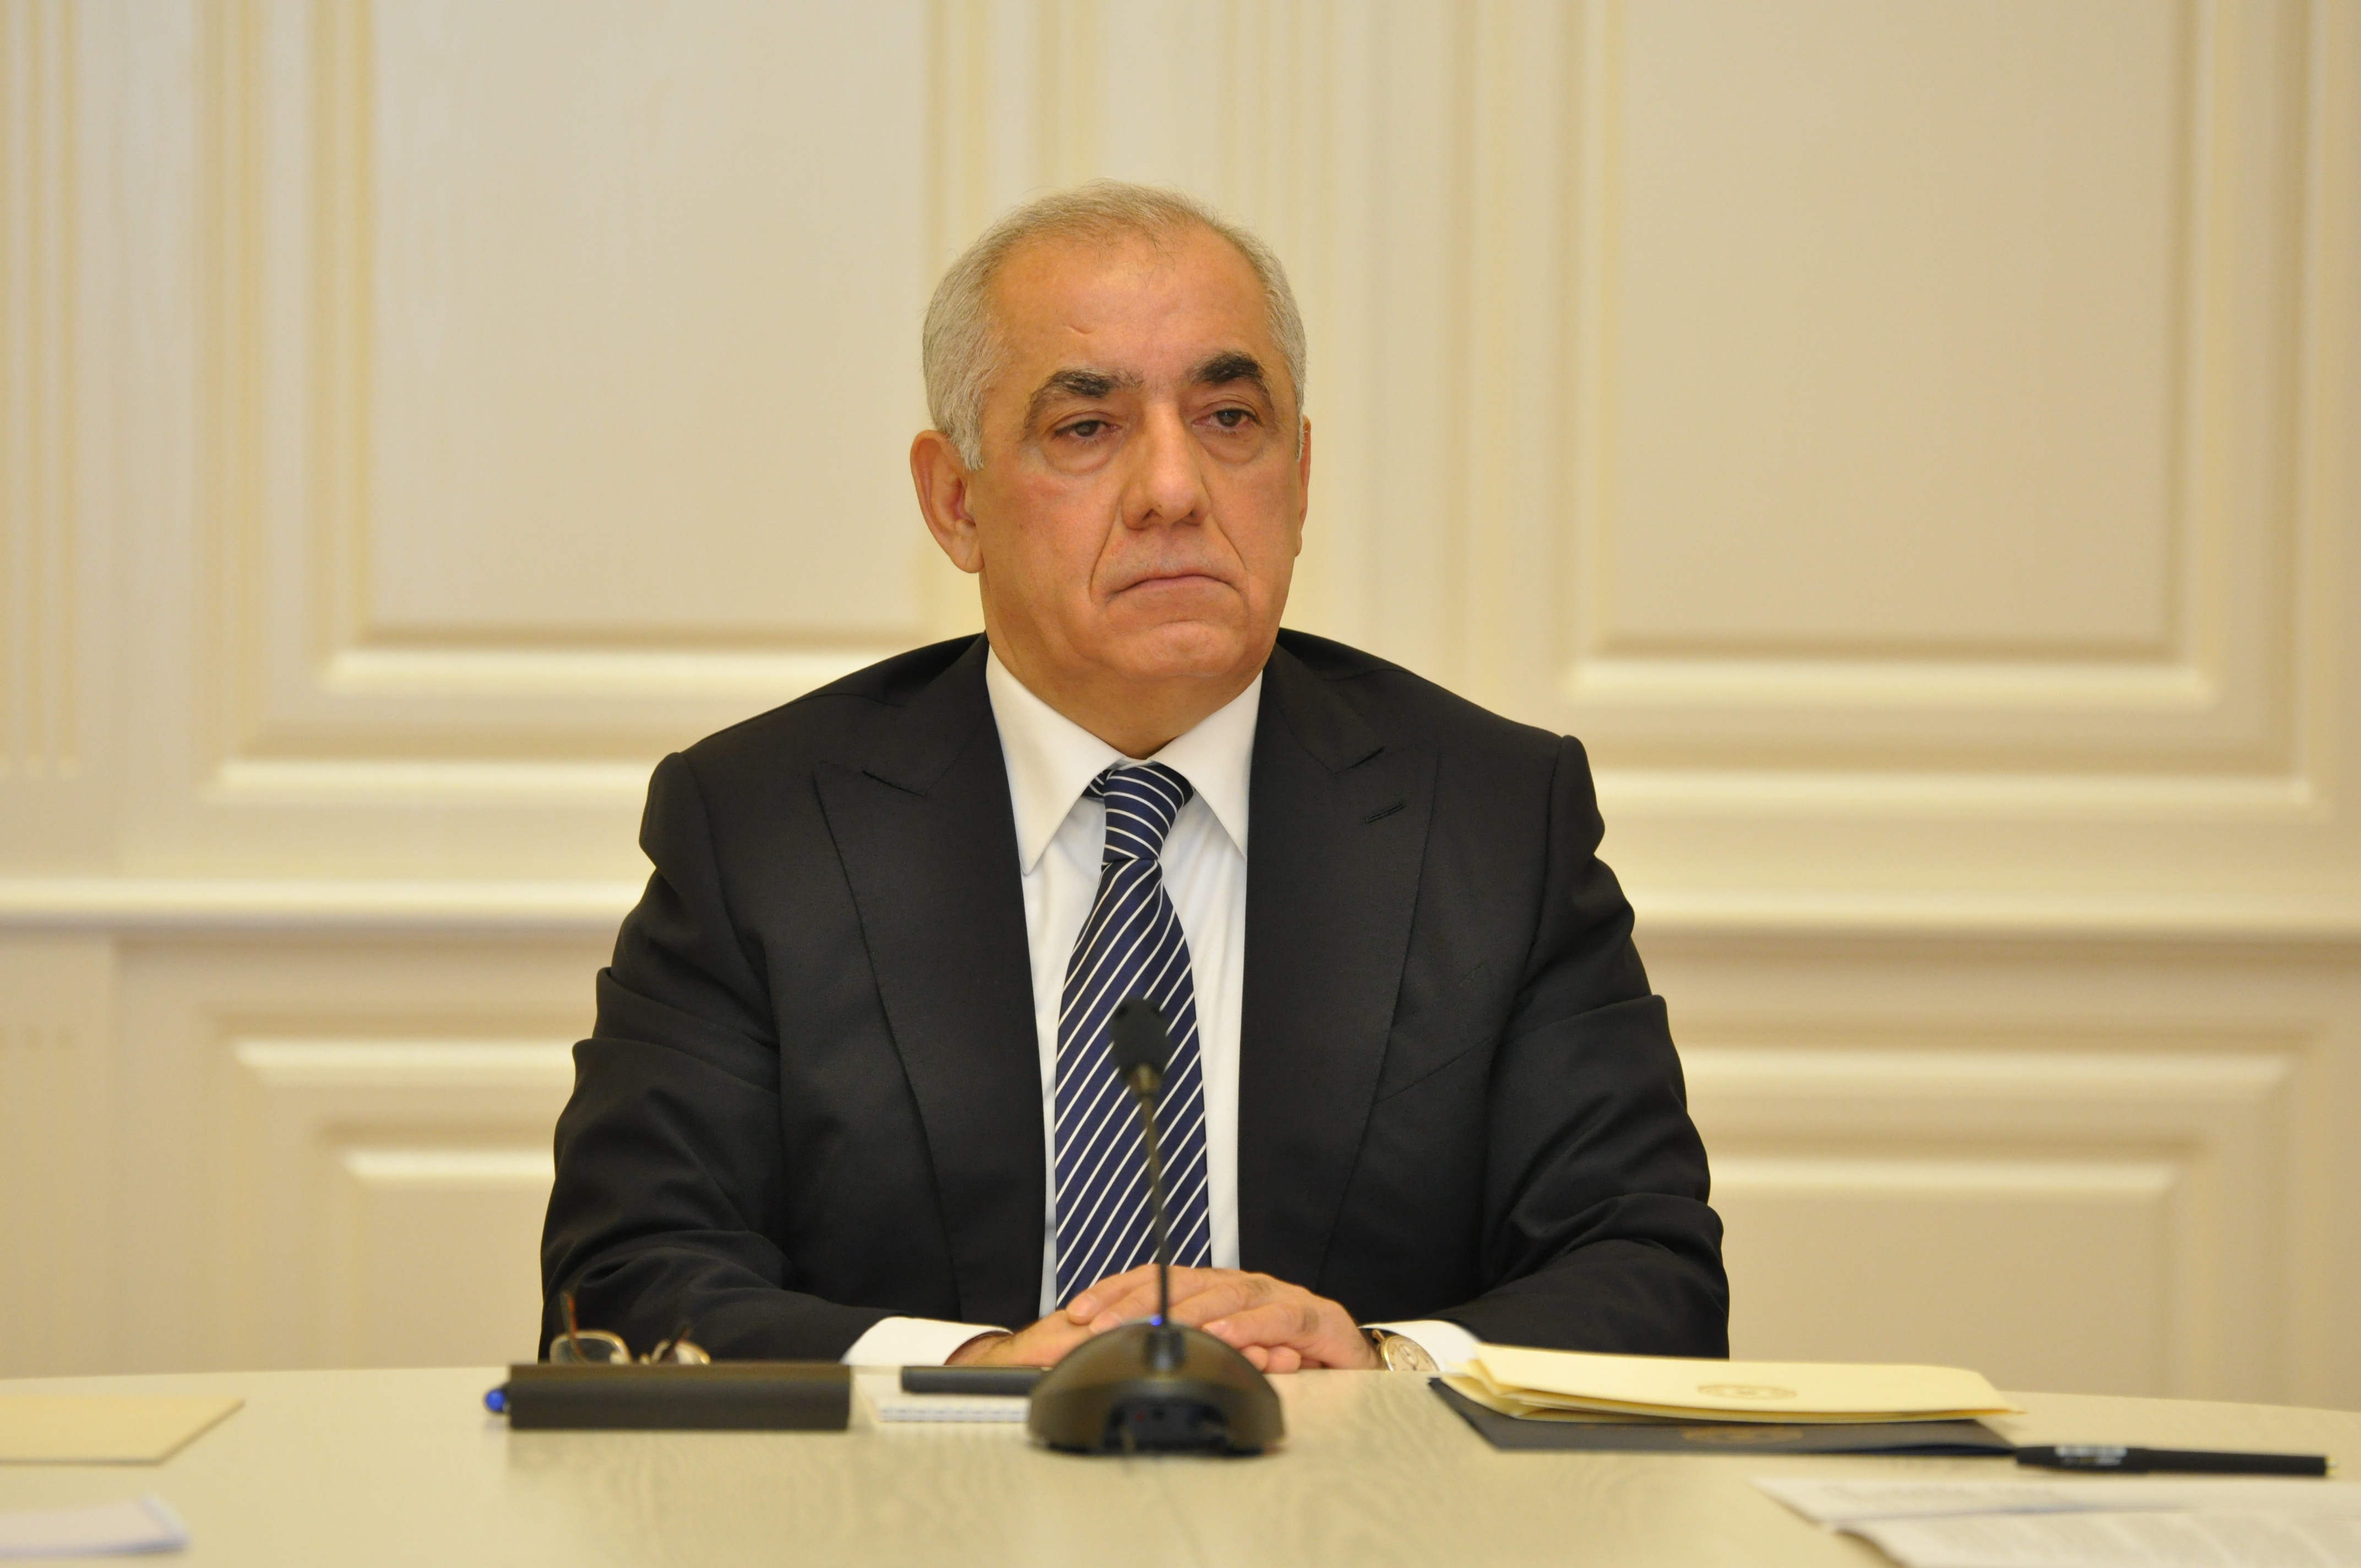 Али Асадов: Интеграция Азербайджана в мировую экономику основана на потенциале, заложенном Гейдаром Алиевым